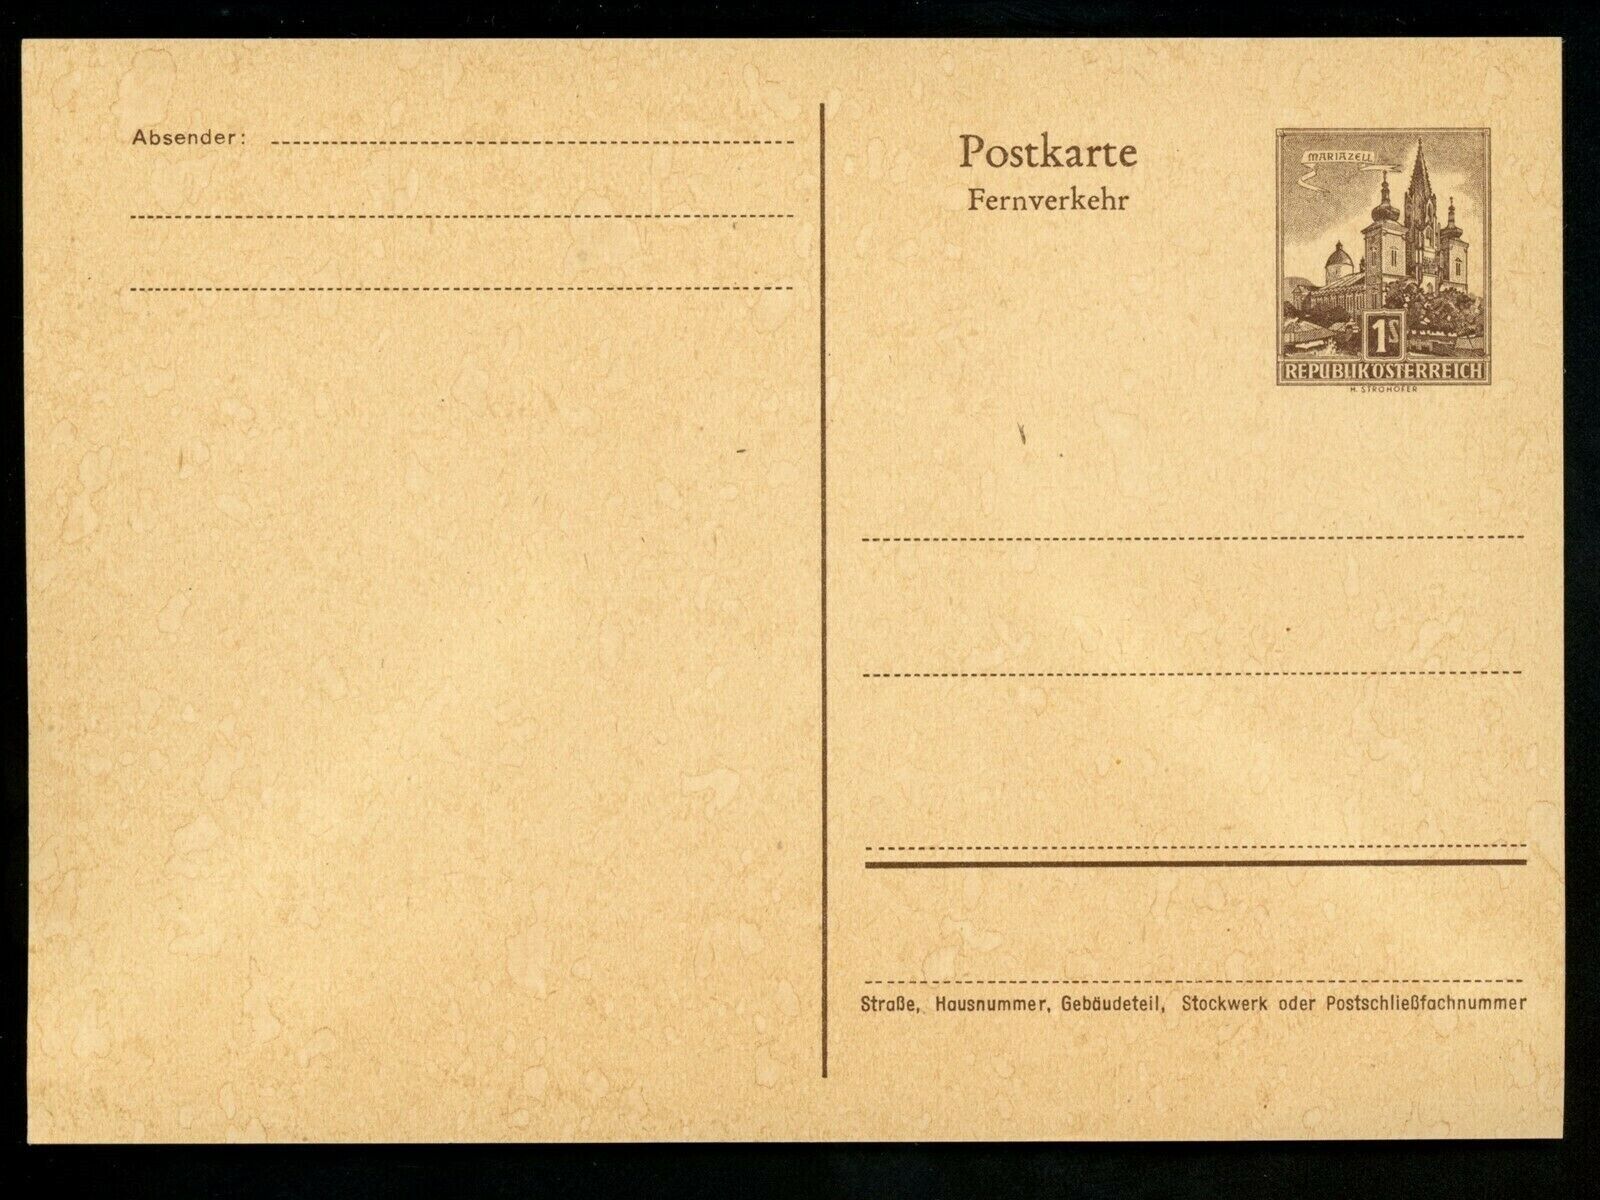 Postal Stationery Award Austria H&G #362 favorite postal card Vintage 1959